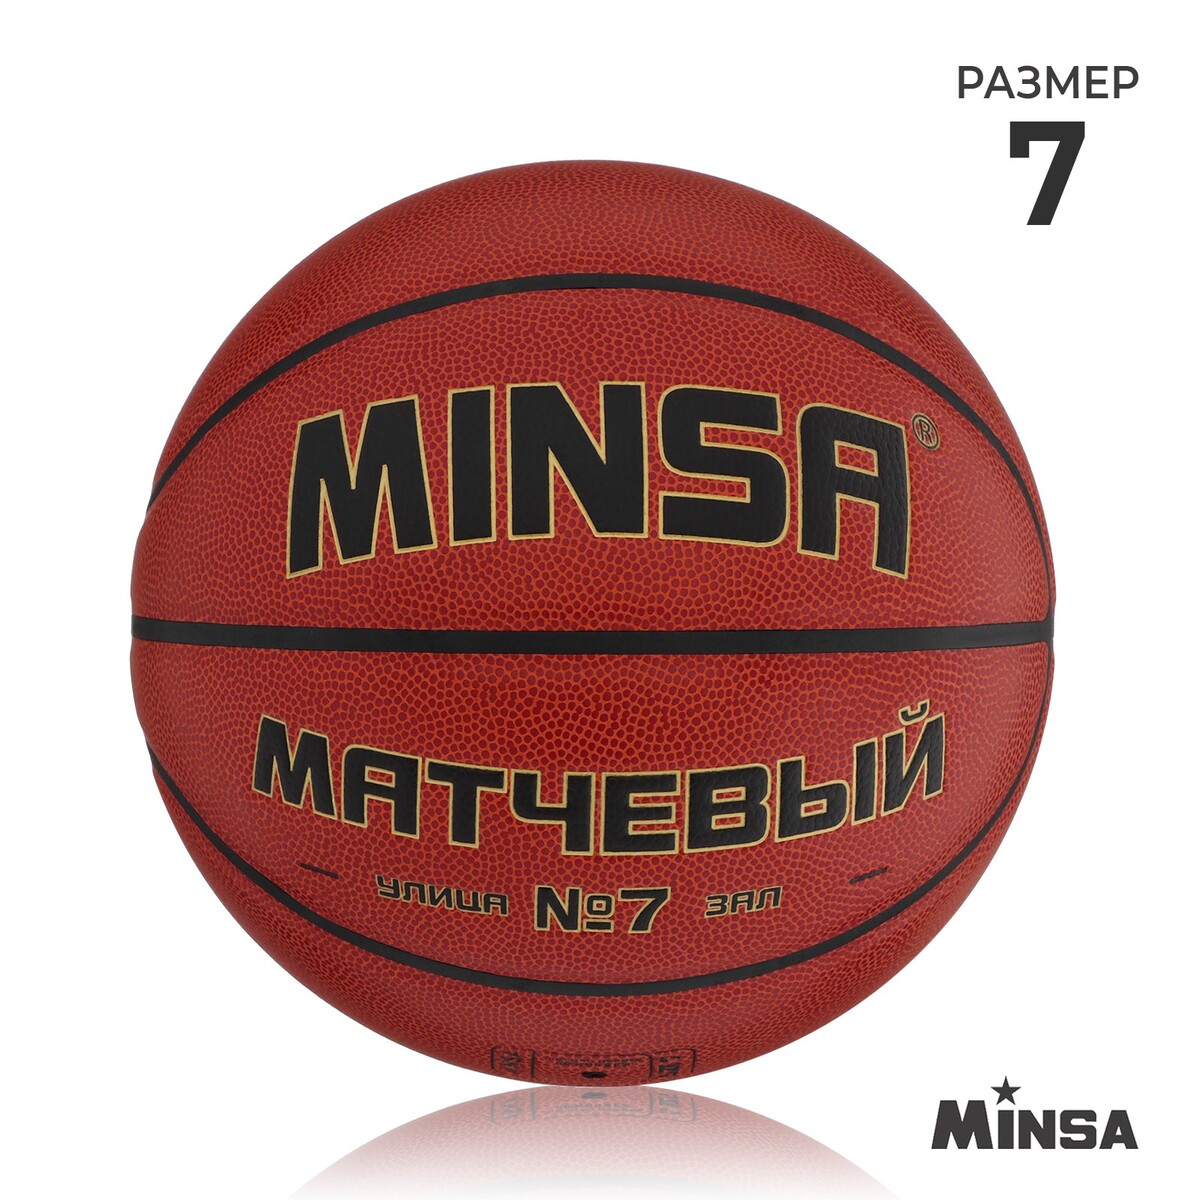 Баскетбольный мяч minsa, матчевый, microfiber pu, клееный, 8 панелей, р. 7 centr opt щит баскетбольный с мячом и насосом bs01538